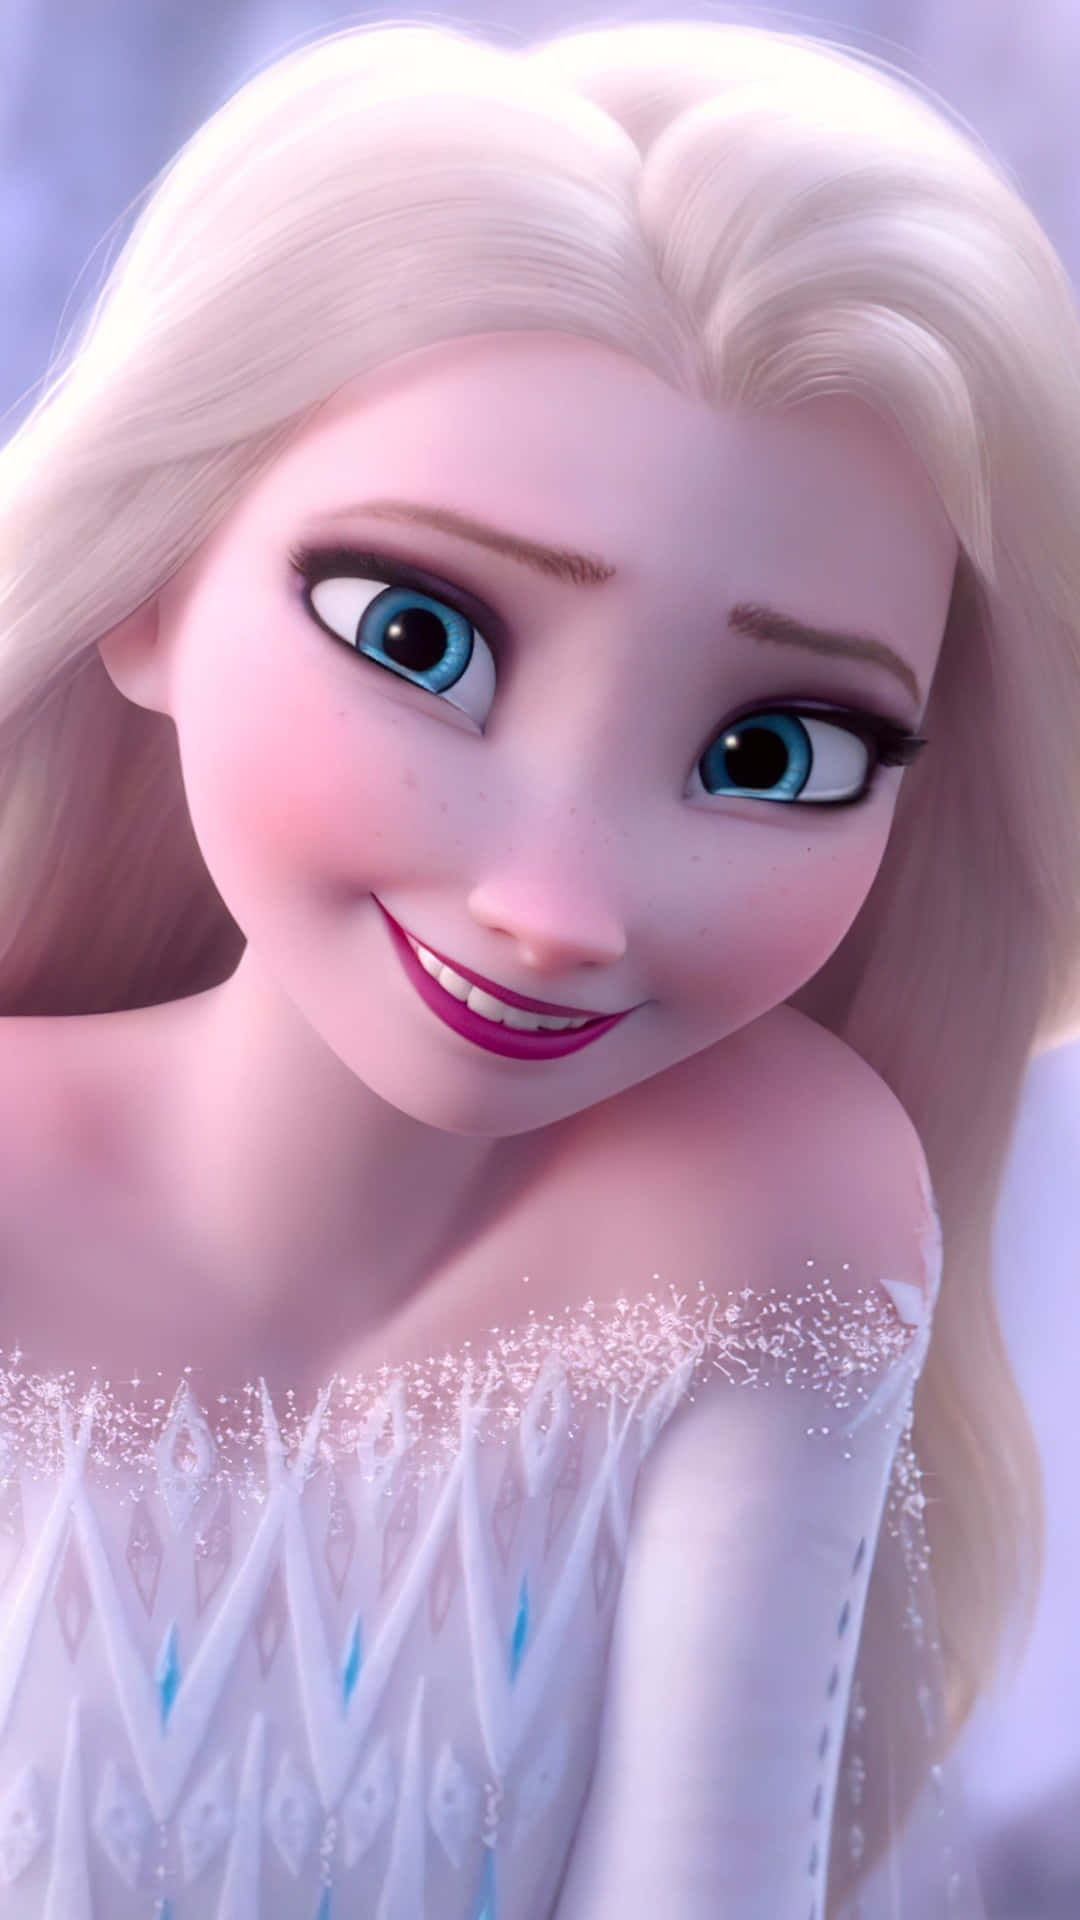 Frozen Queen Elsa casts her icy spell